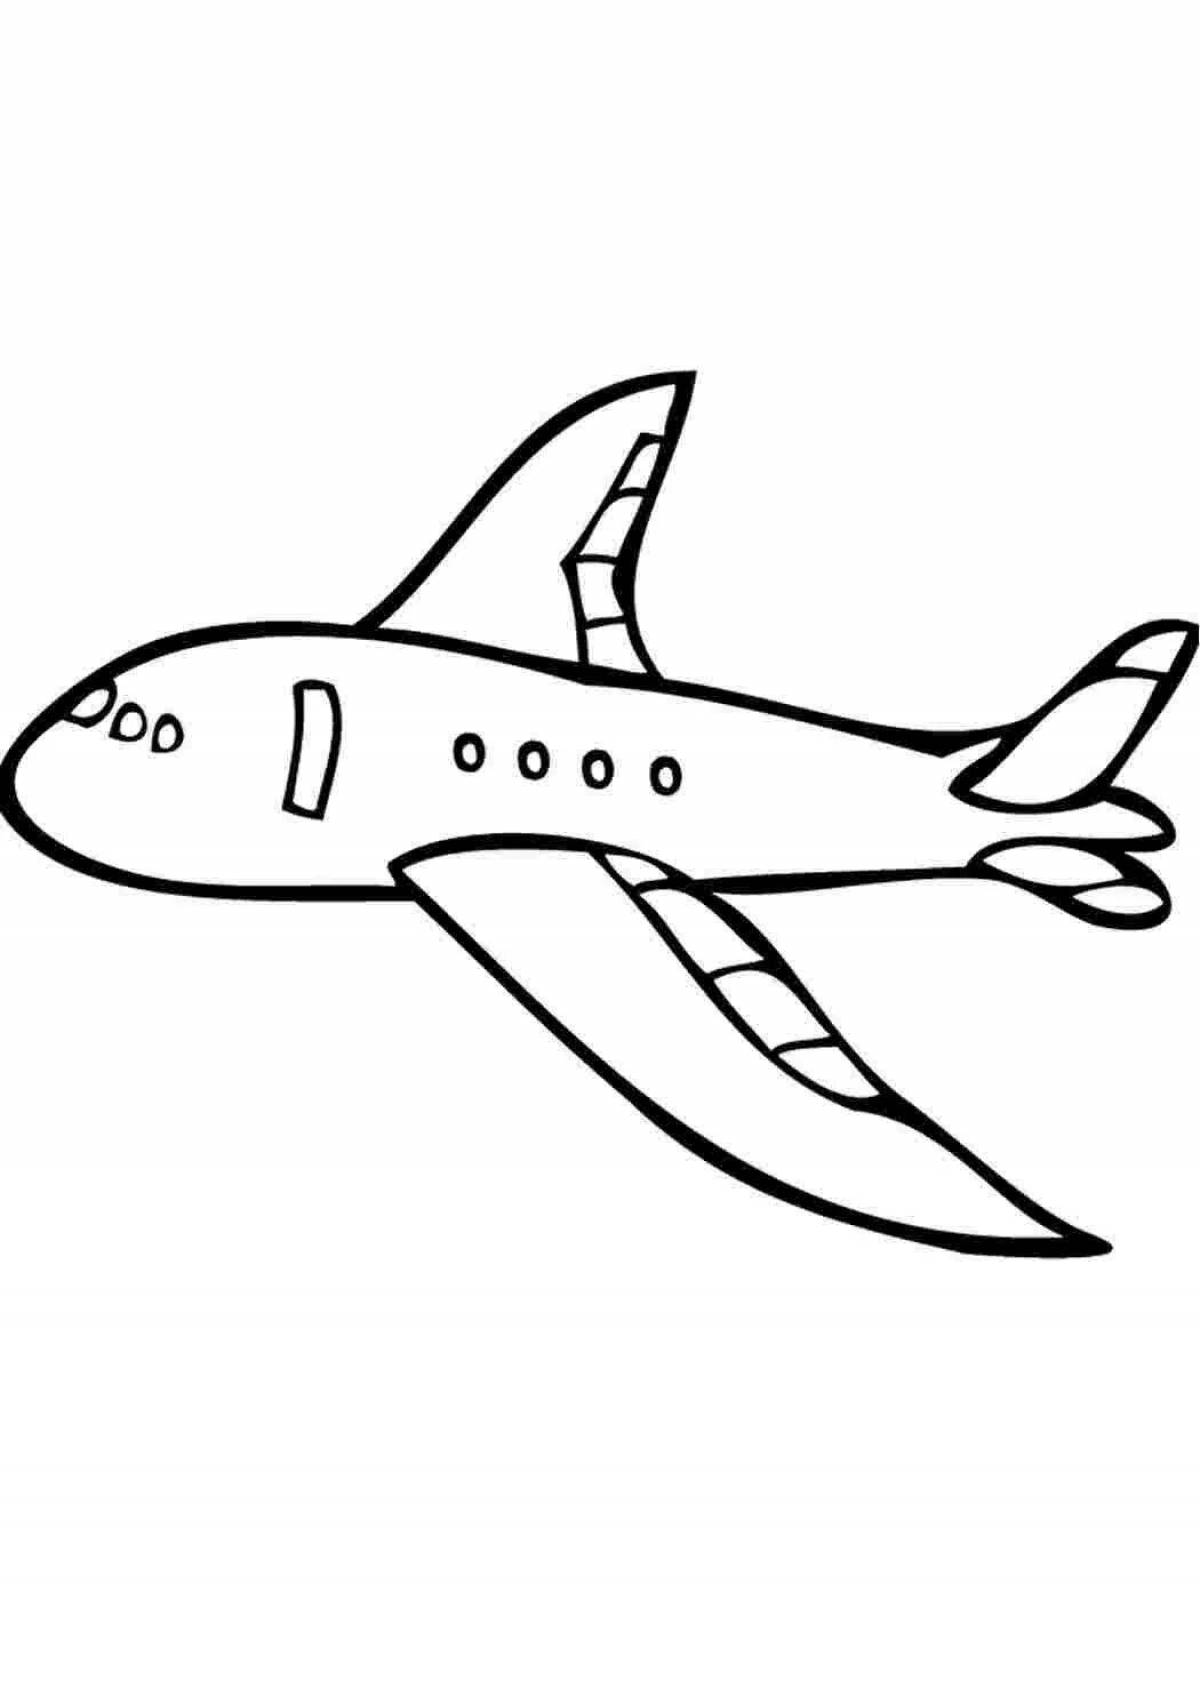 Привлекательная страница раскраски самолета